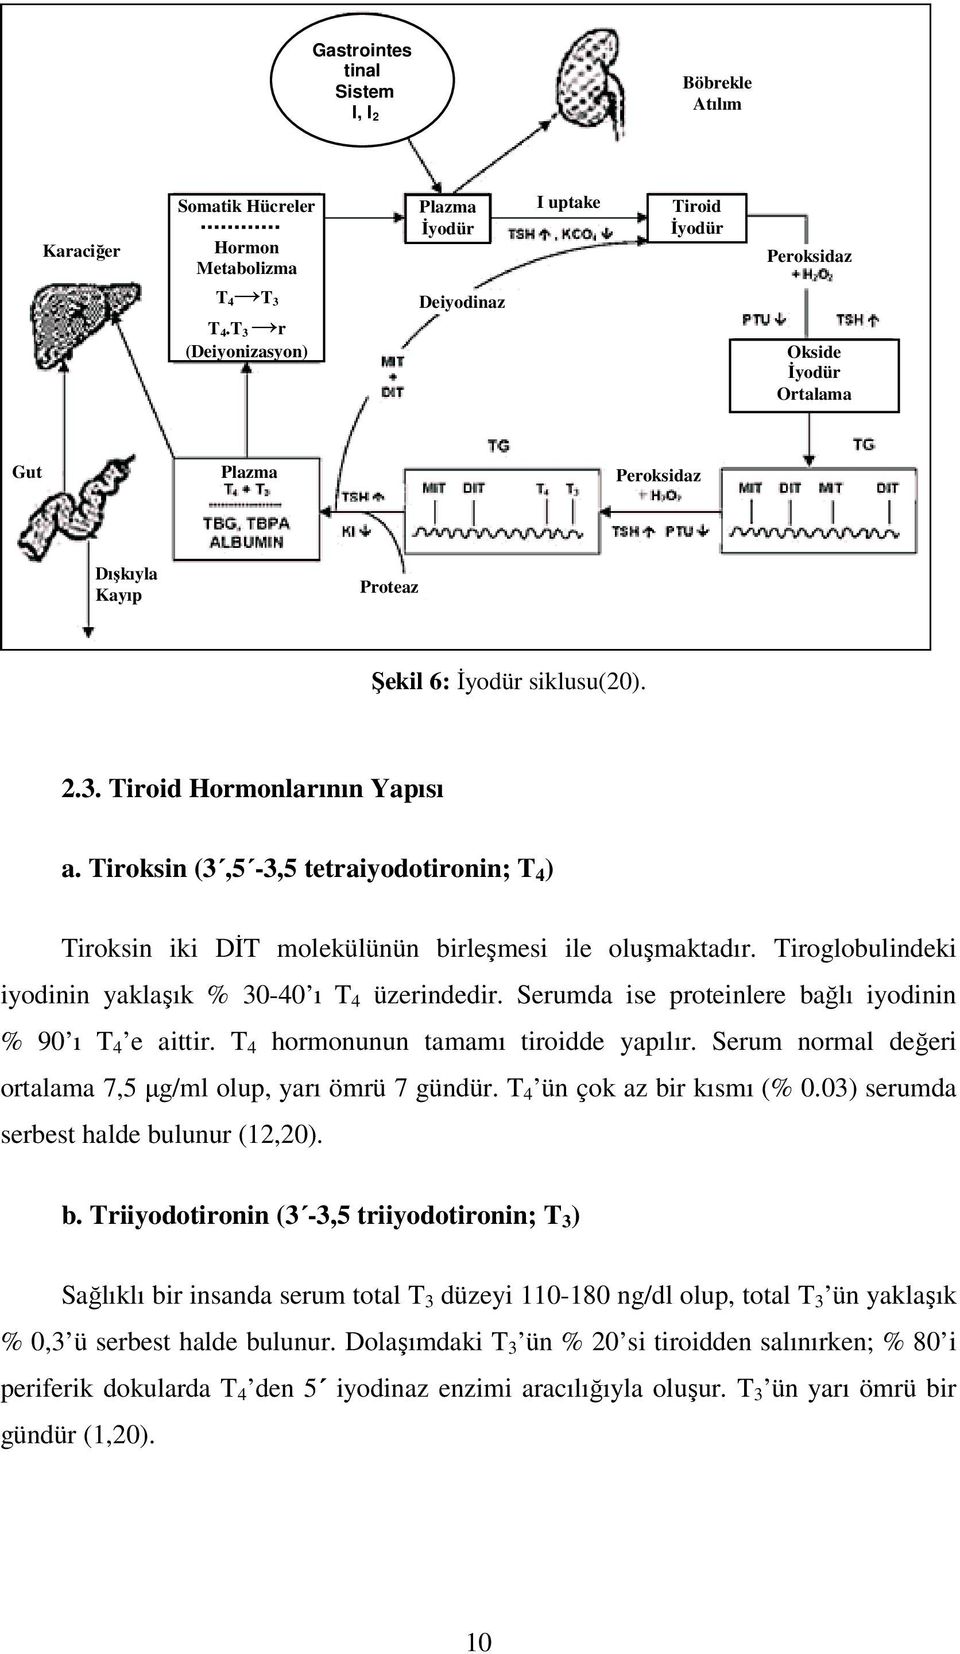 Tiroksin (3,5-3,5 tetraiyodotironin; T 4 ) Tiroksin iki DİT molekülünün birleşmesi ile oluşmaktadır. Tiroglobulindeki iyodinin yaklaşık % 30-40 ı T 4 üzerindedir.